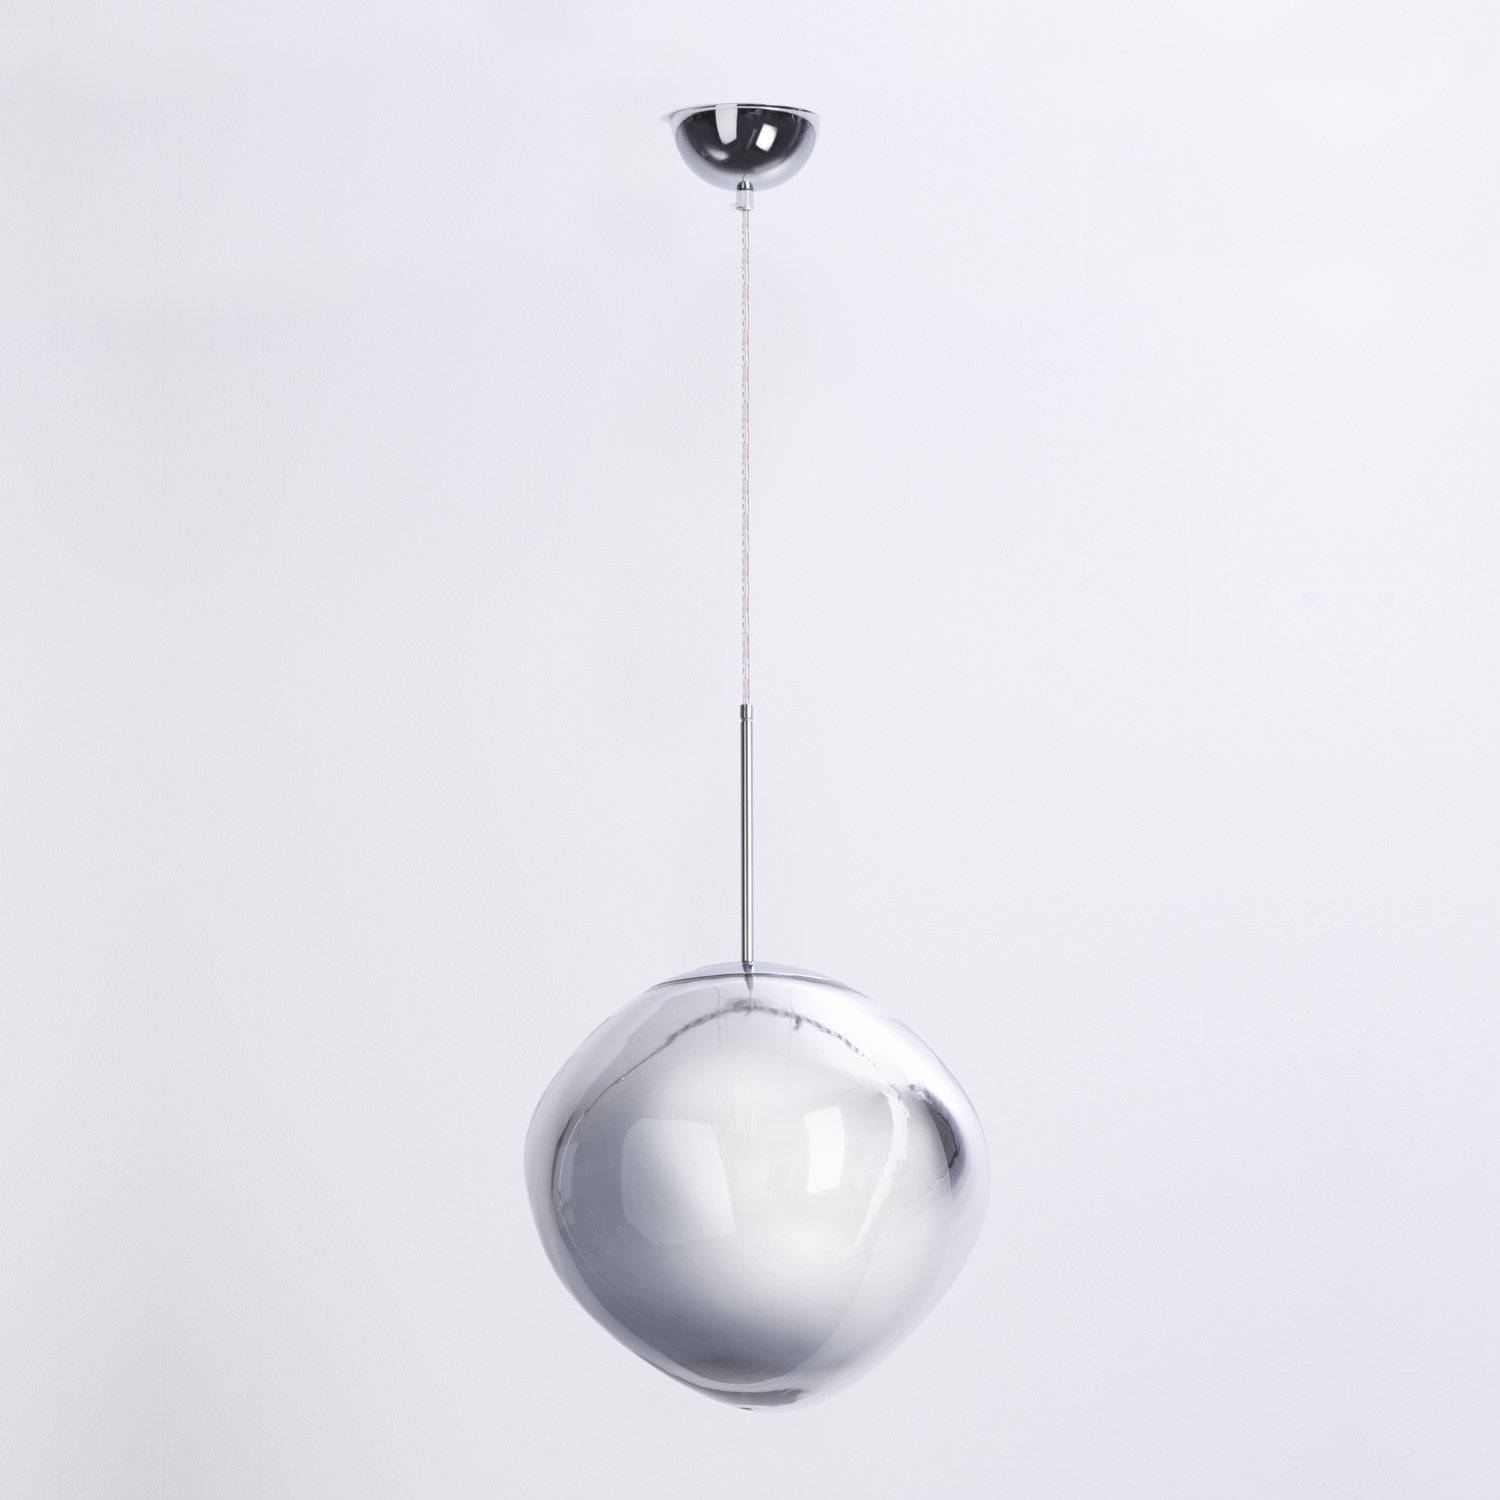 Lampada da Soffitto in PVC Gota 48, immagine della galleria 1